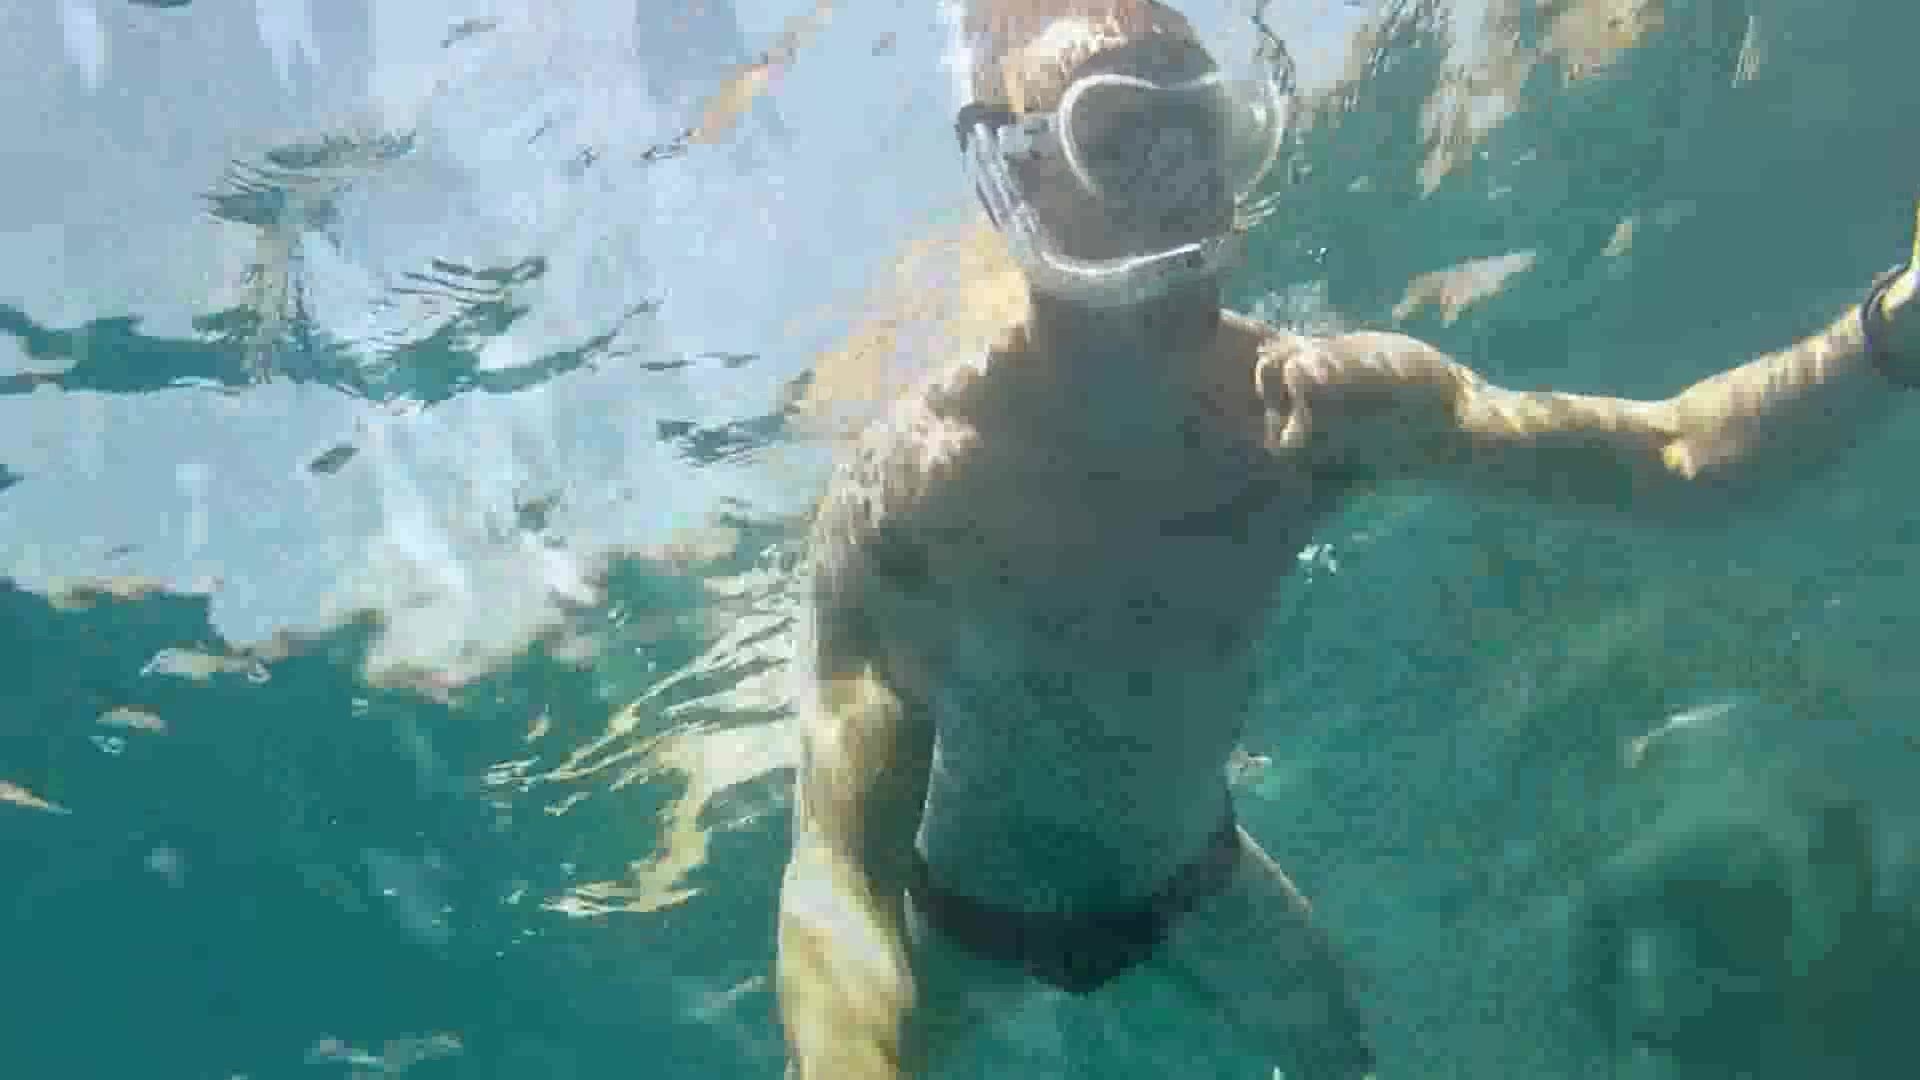 Cute guy freediving underwater in black speedo